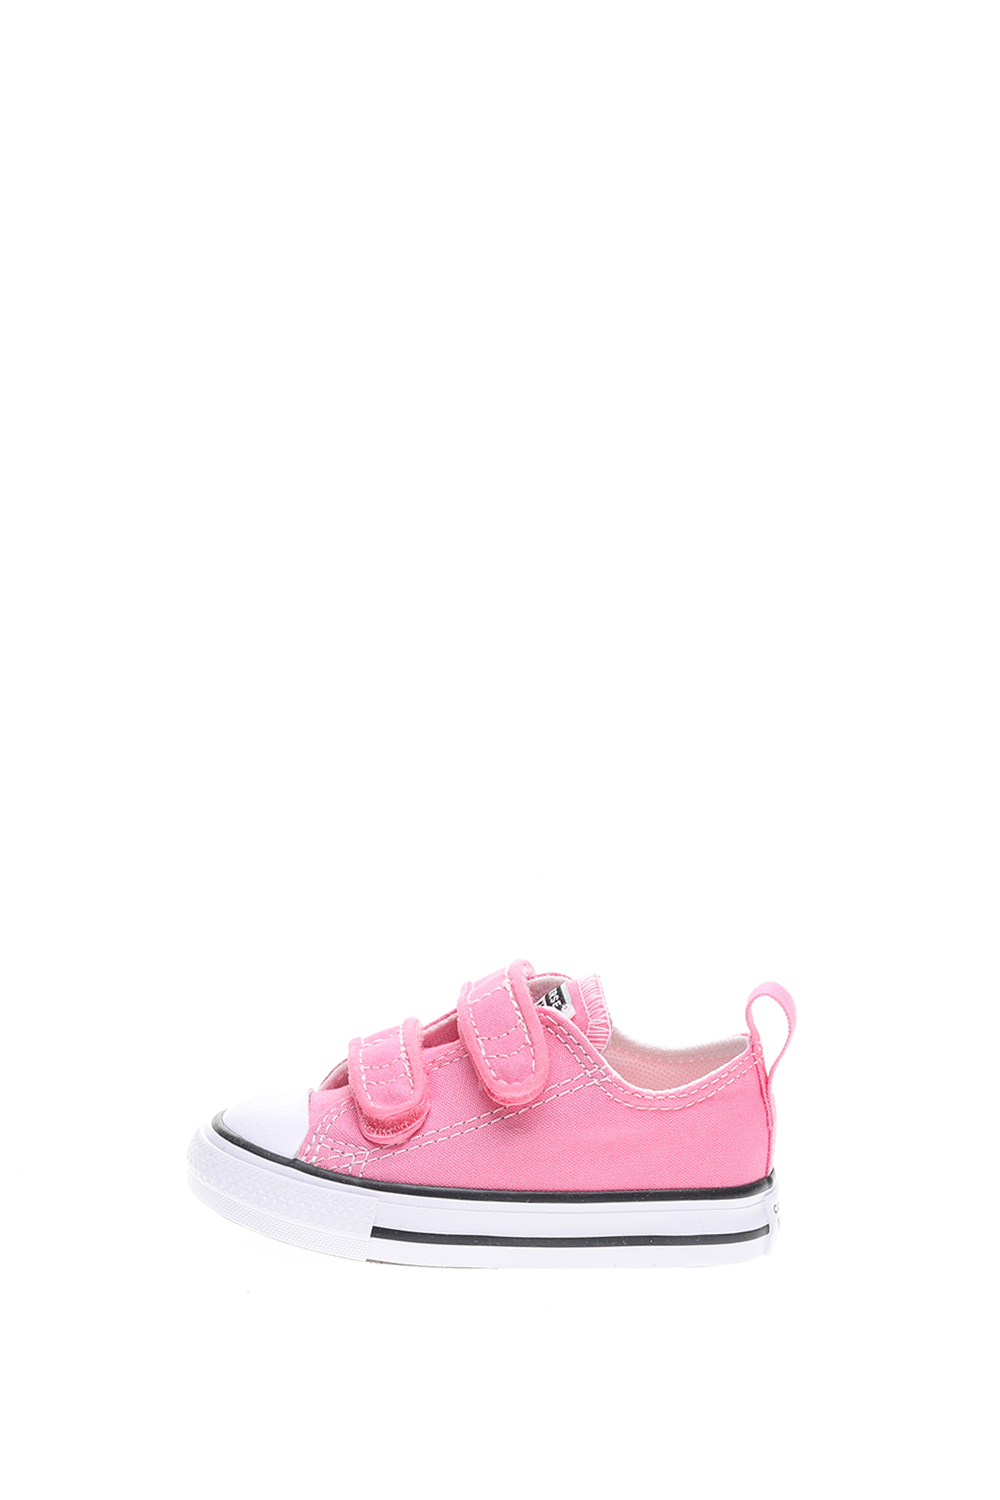 Παιδικά/Baby/Παπούτσια/Αθλητικά CONVERSE - Βρεφικά sneakers CONVERSE Chuck Taylor All Star 2V ροζ